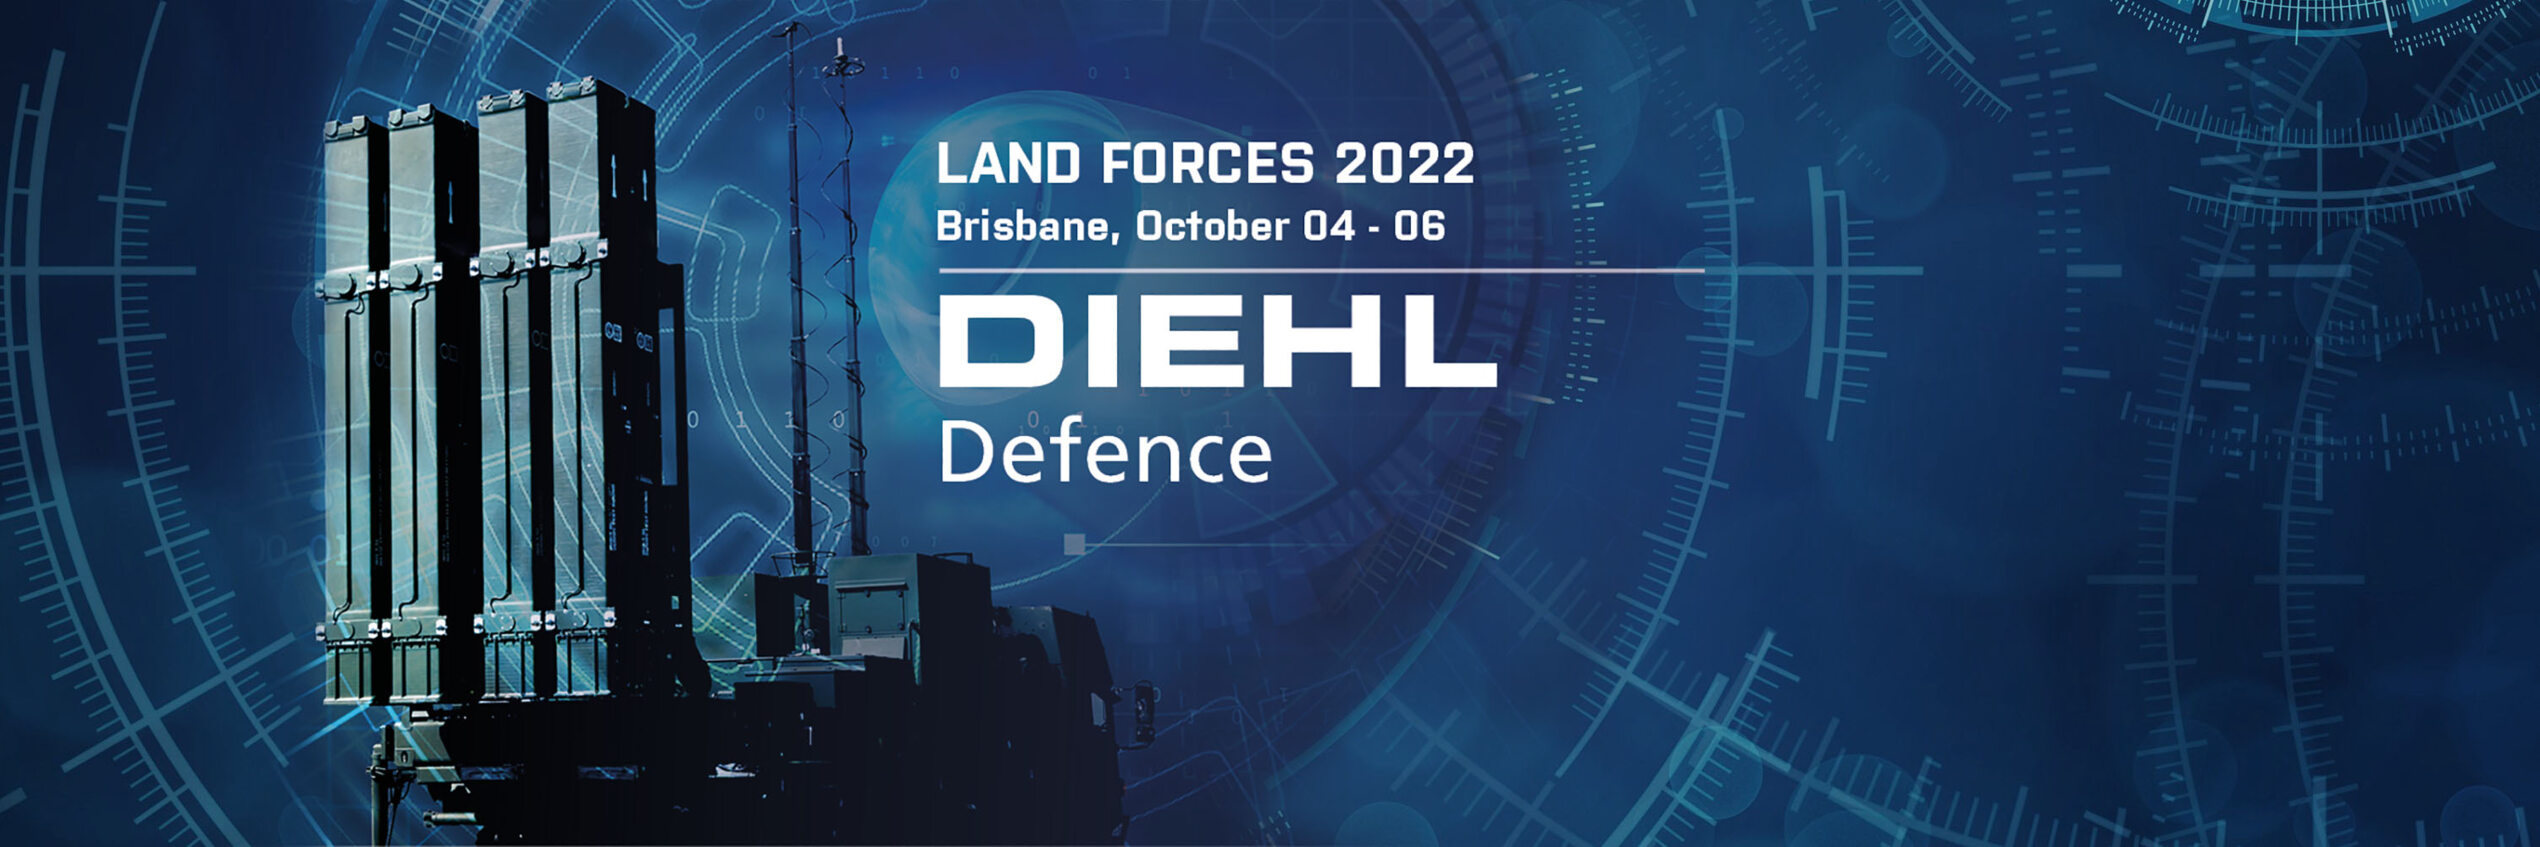 Diehl Defence at Land Forces 2022 in Brisbane, Australia